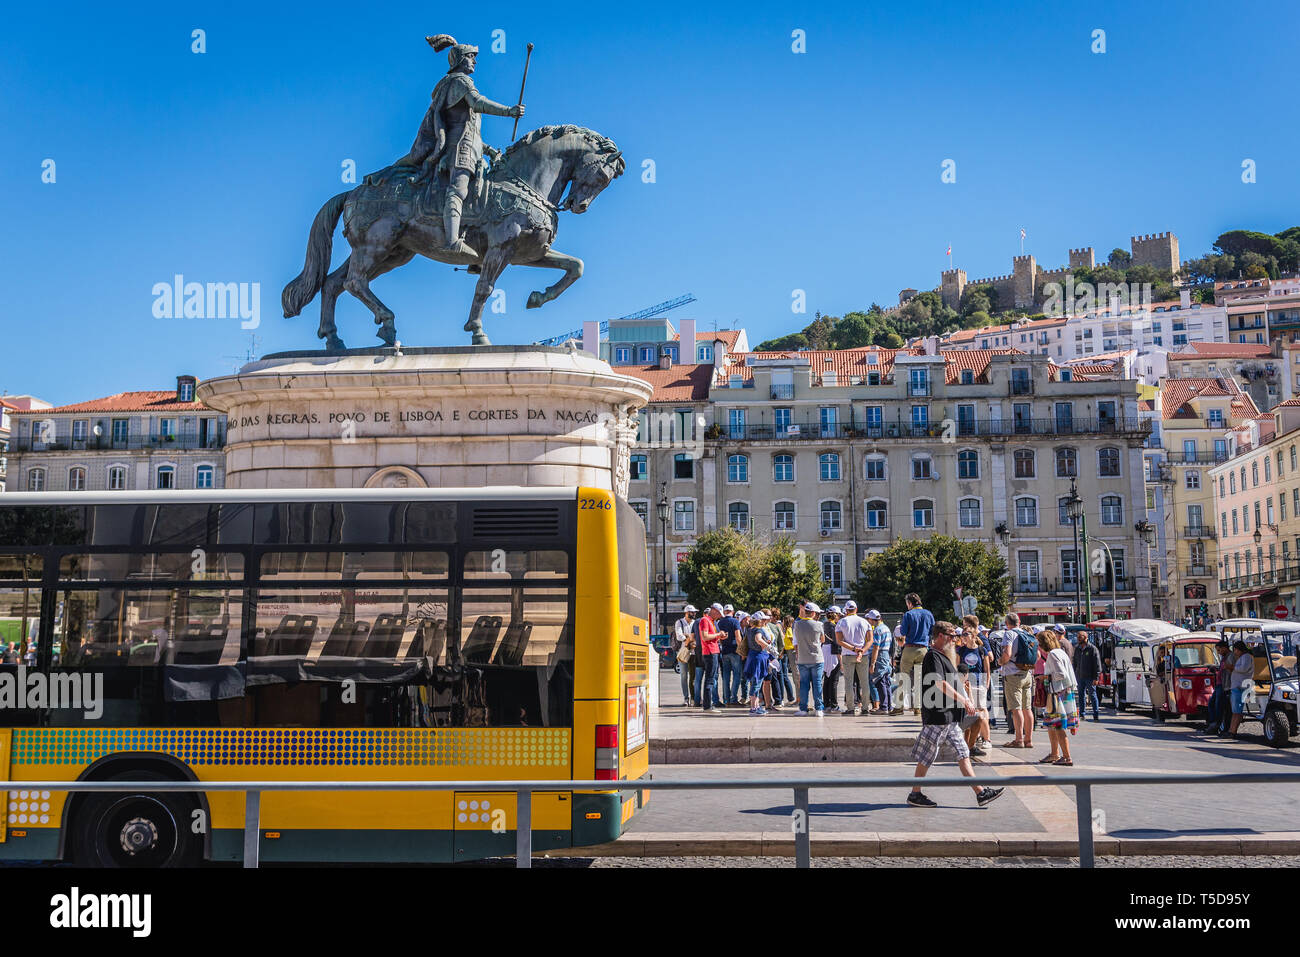 Reiterstandbild von König Johann I. von Portugal auf einem Praca da Figueira - Platz der Feigenbaum in Baixa von Lissabon, Portugal Stockfoto